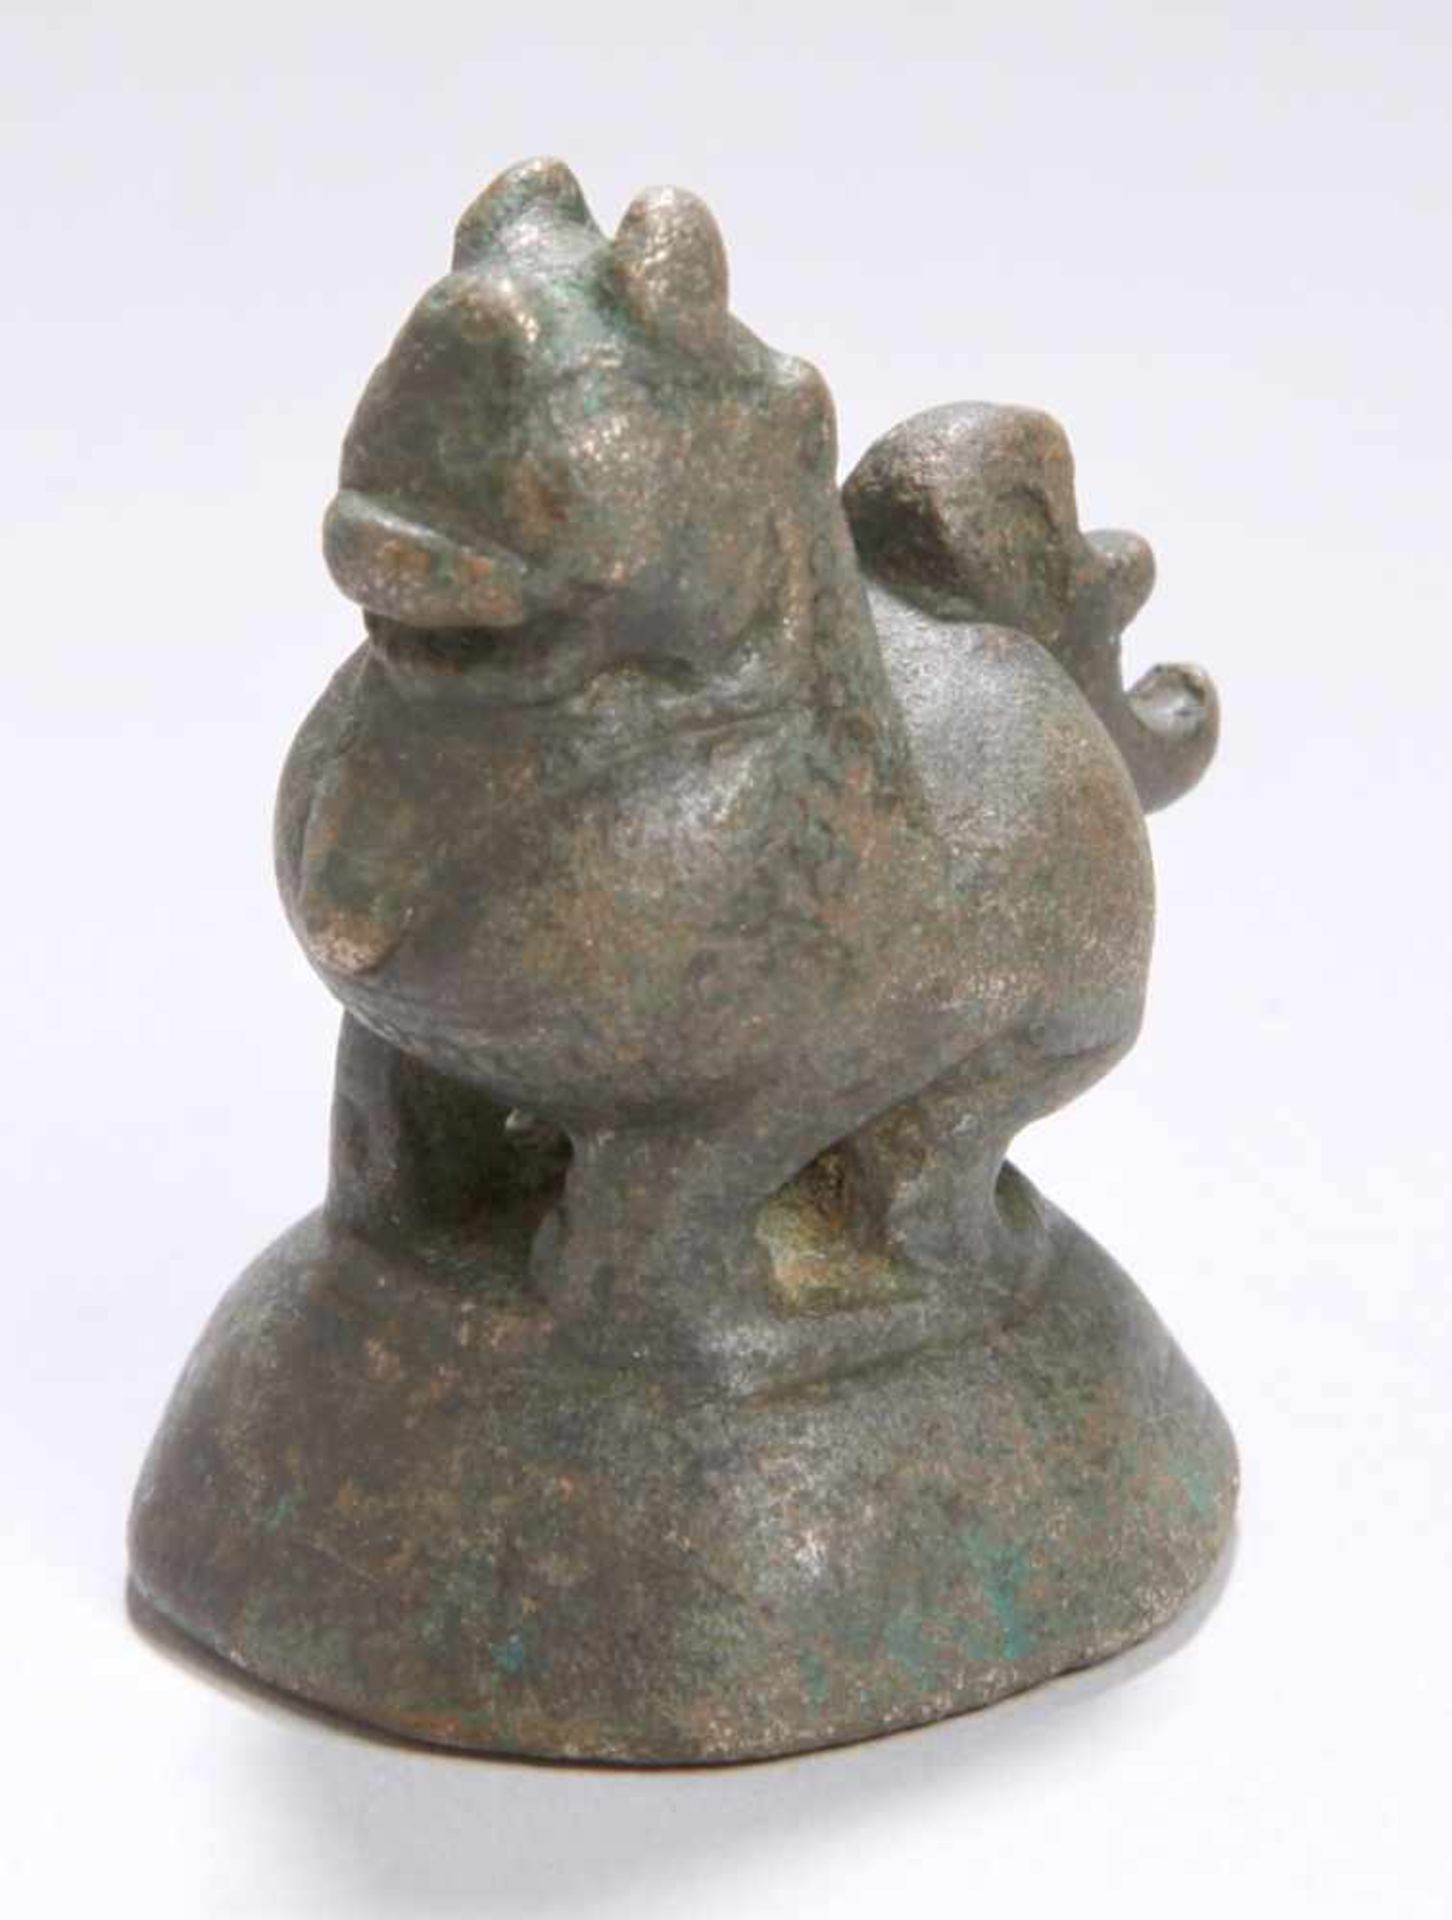 Bronze-Opiumgewicht, Burma, 18. Jh., gearbeitet in Form von Löwe auf Sockel, dunkleAlterspatina